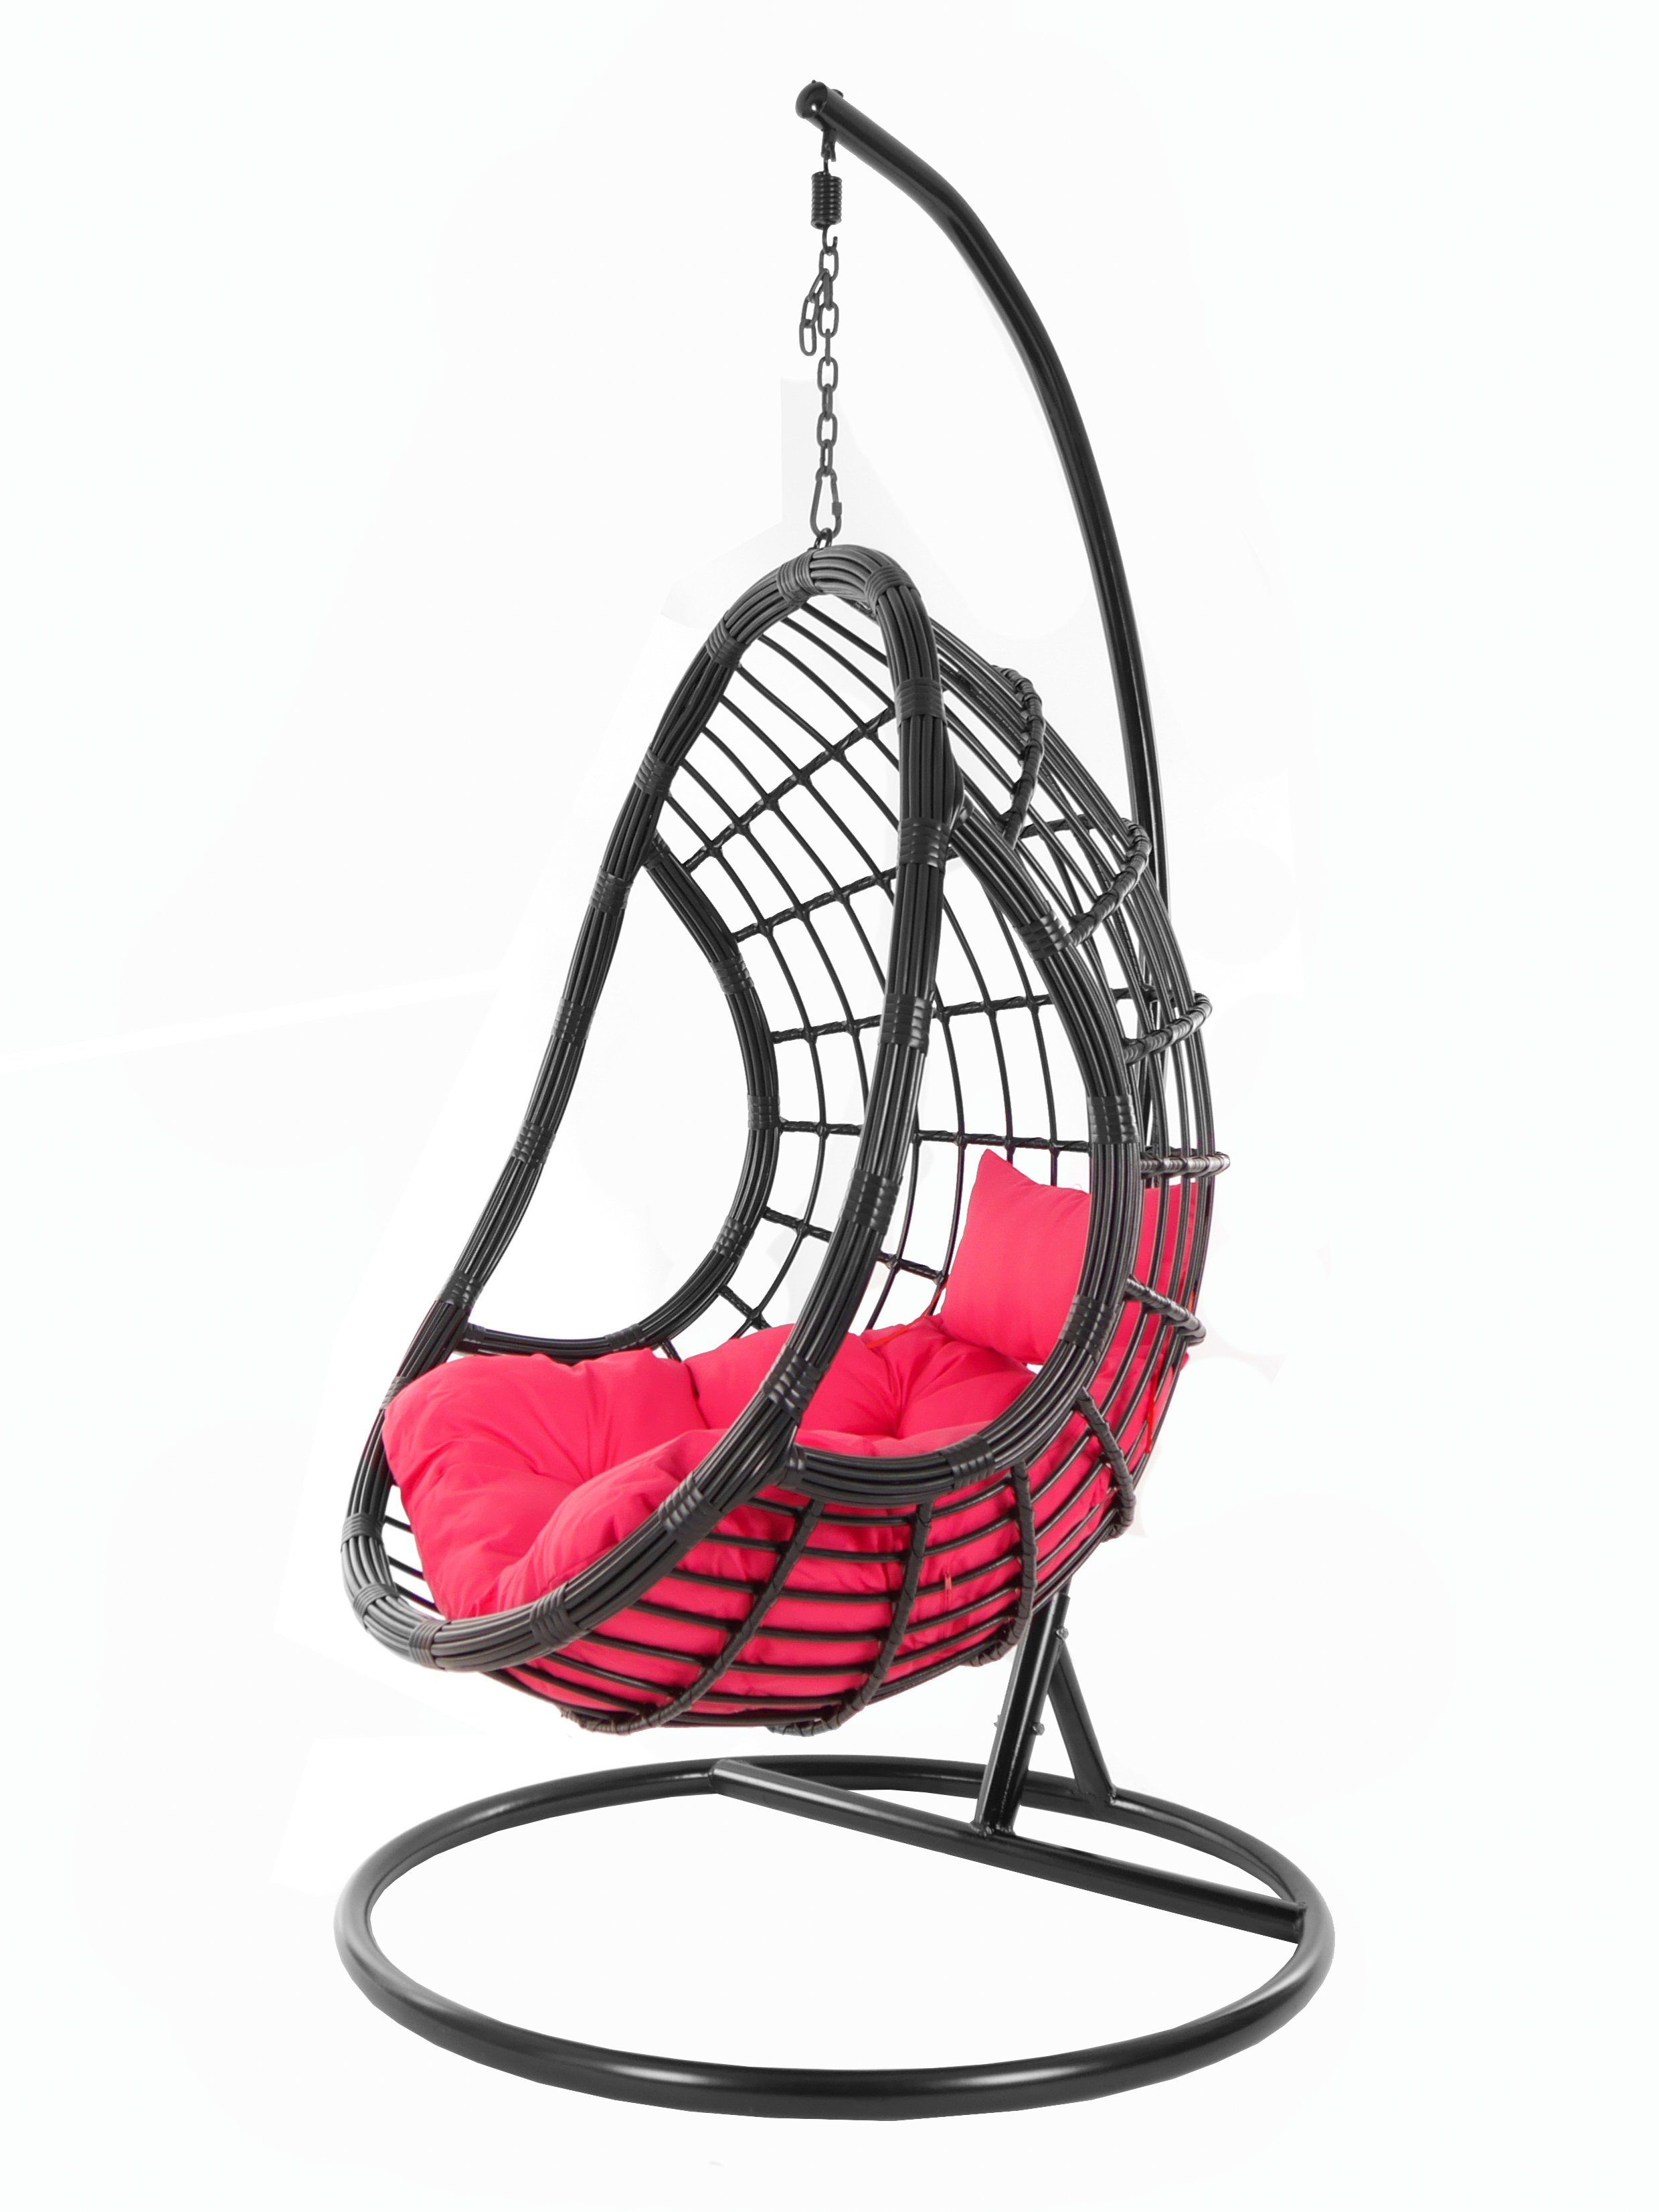 KIDEO Hängesessel PALMANOVA black, Swing Chair, schwarz, Loungemöbel, Hängesessel mit Gestell und Kissen, Schwebesessel, edles Design pink (3333 hot pink)